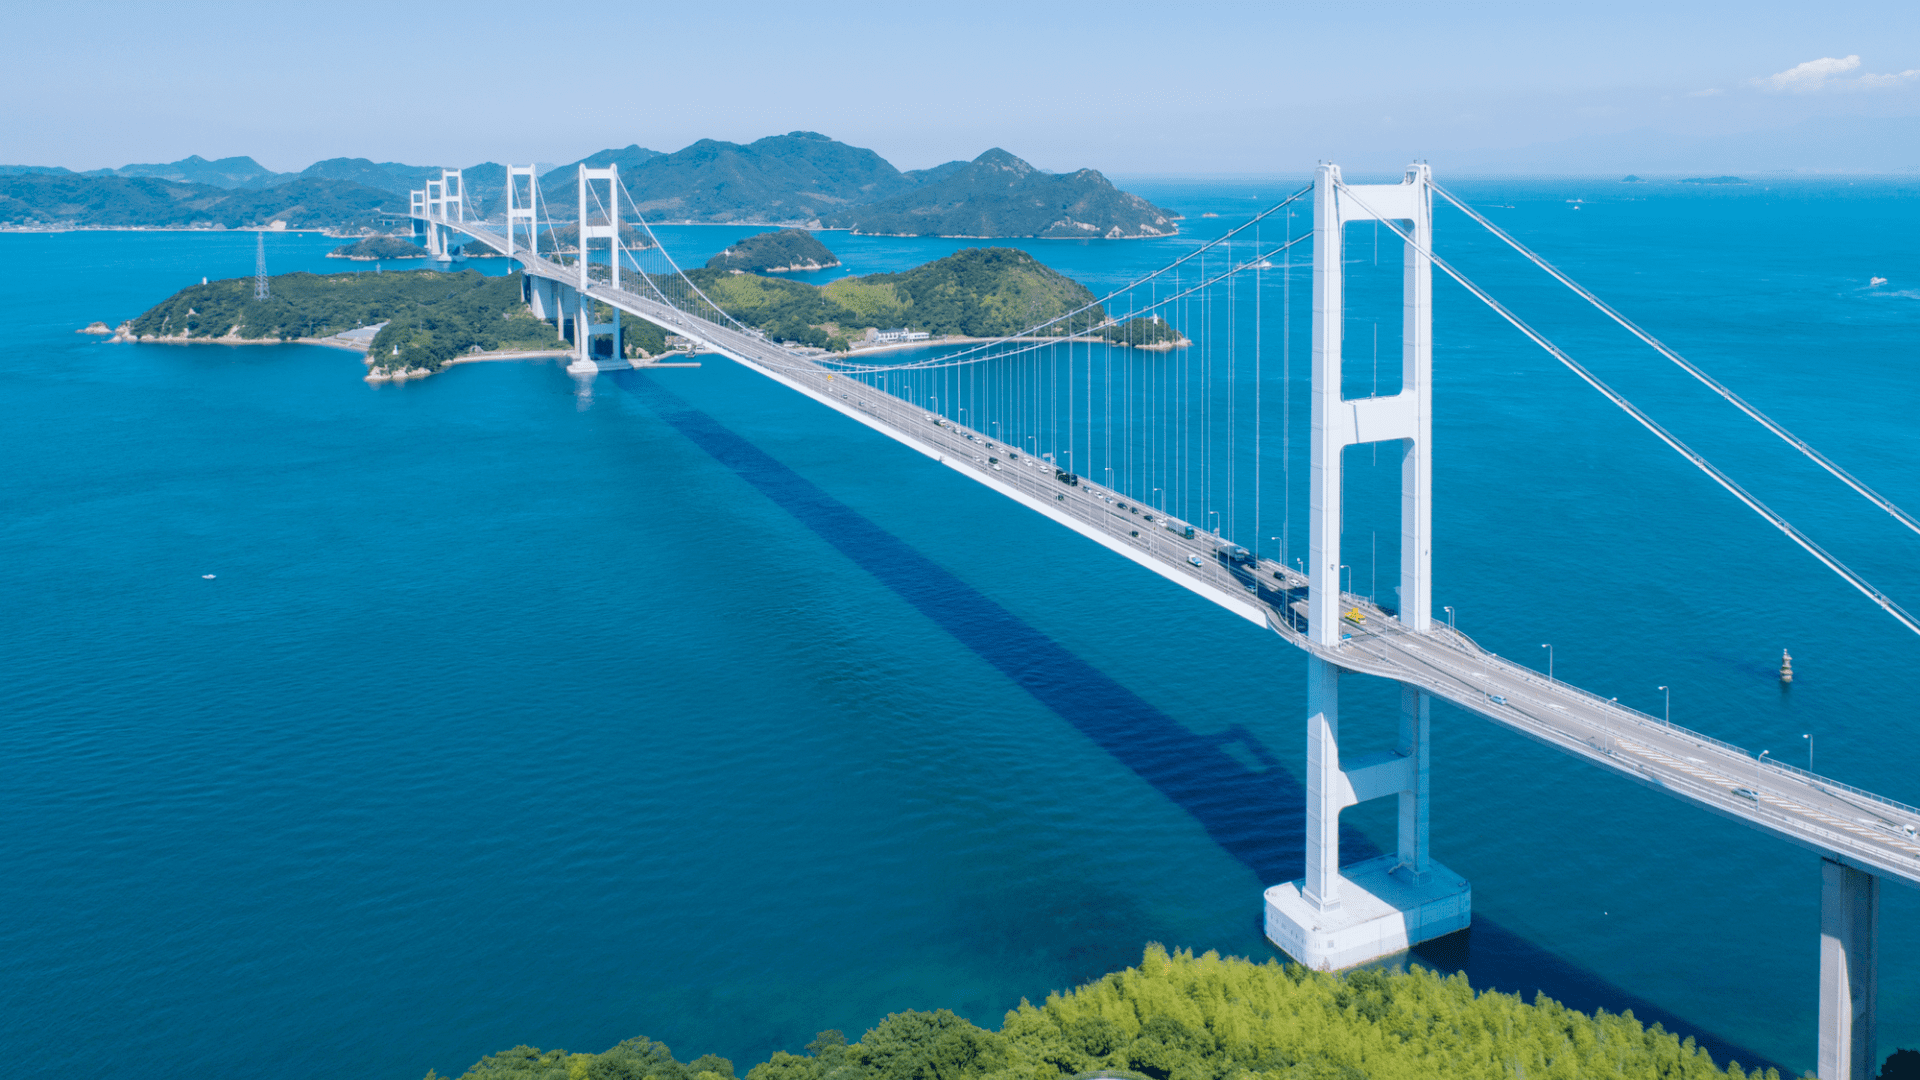 瀬戸内しまなみ海道の大自然と美しい橋が織りなす絶景